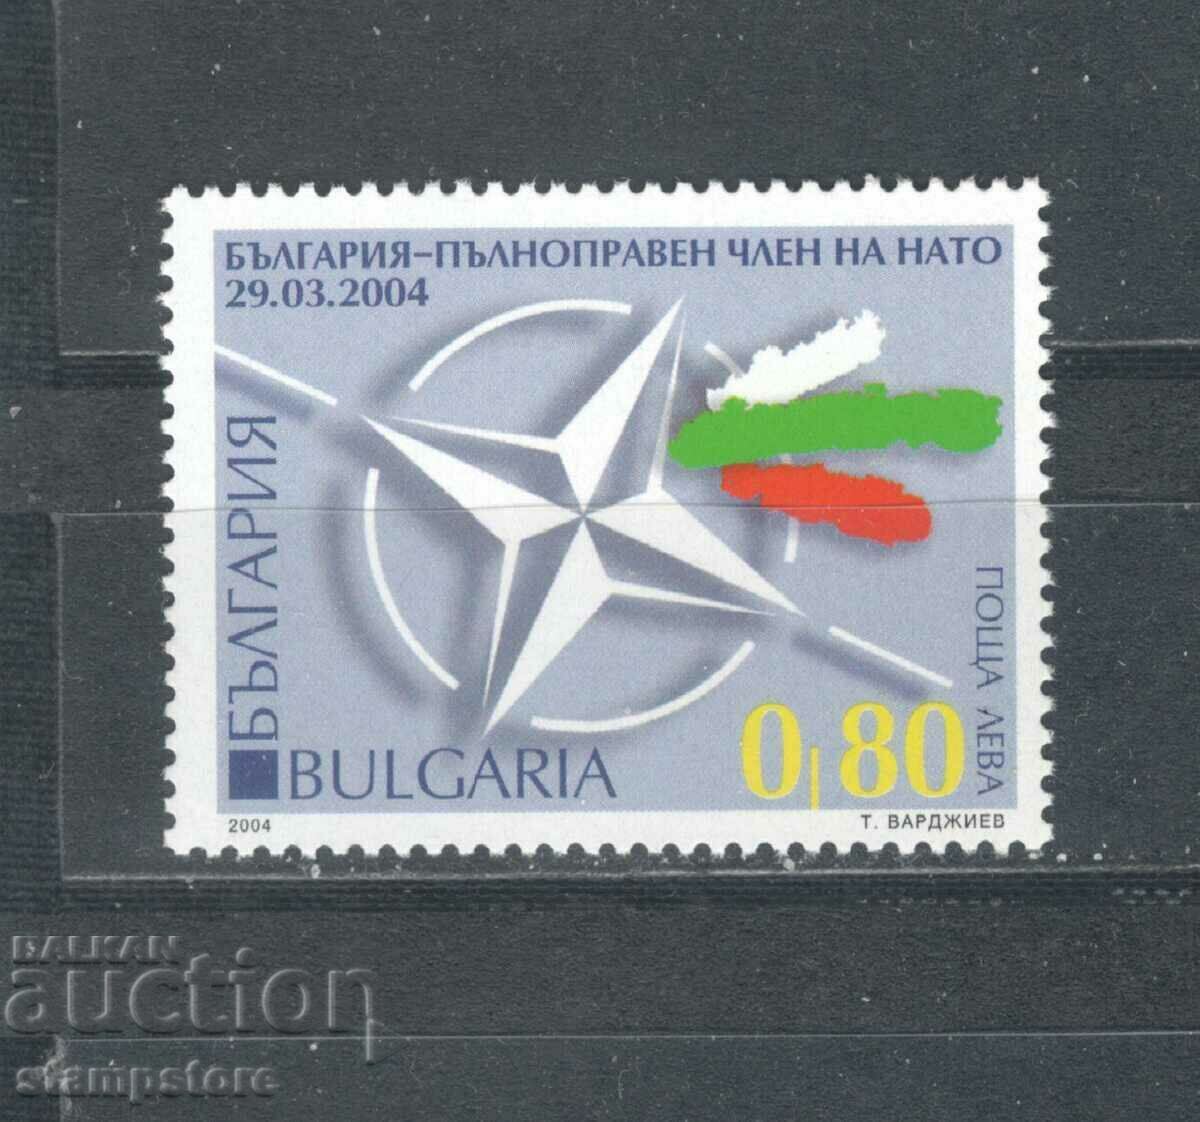 Bulgaria - a full member of NATO